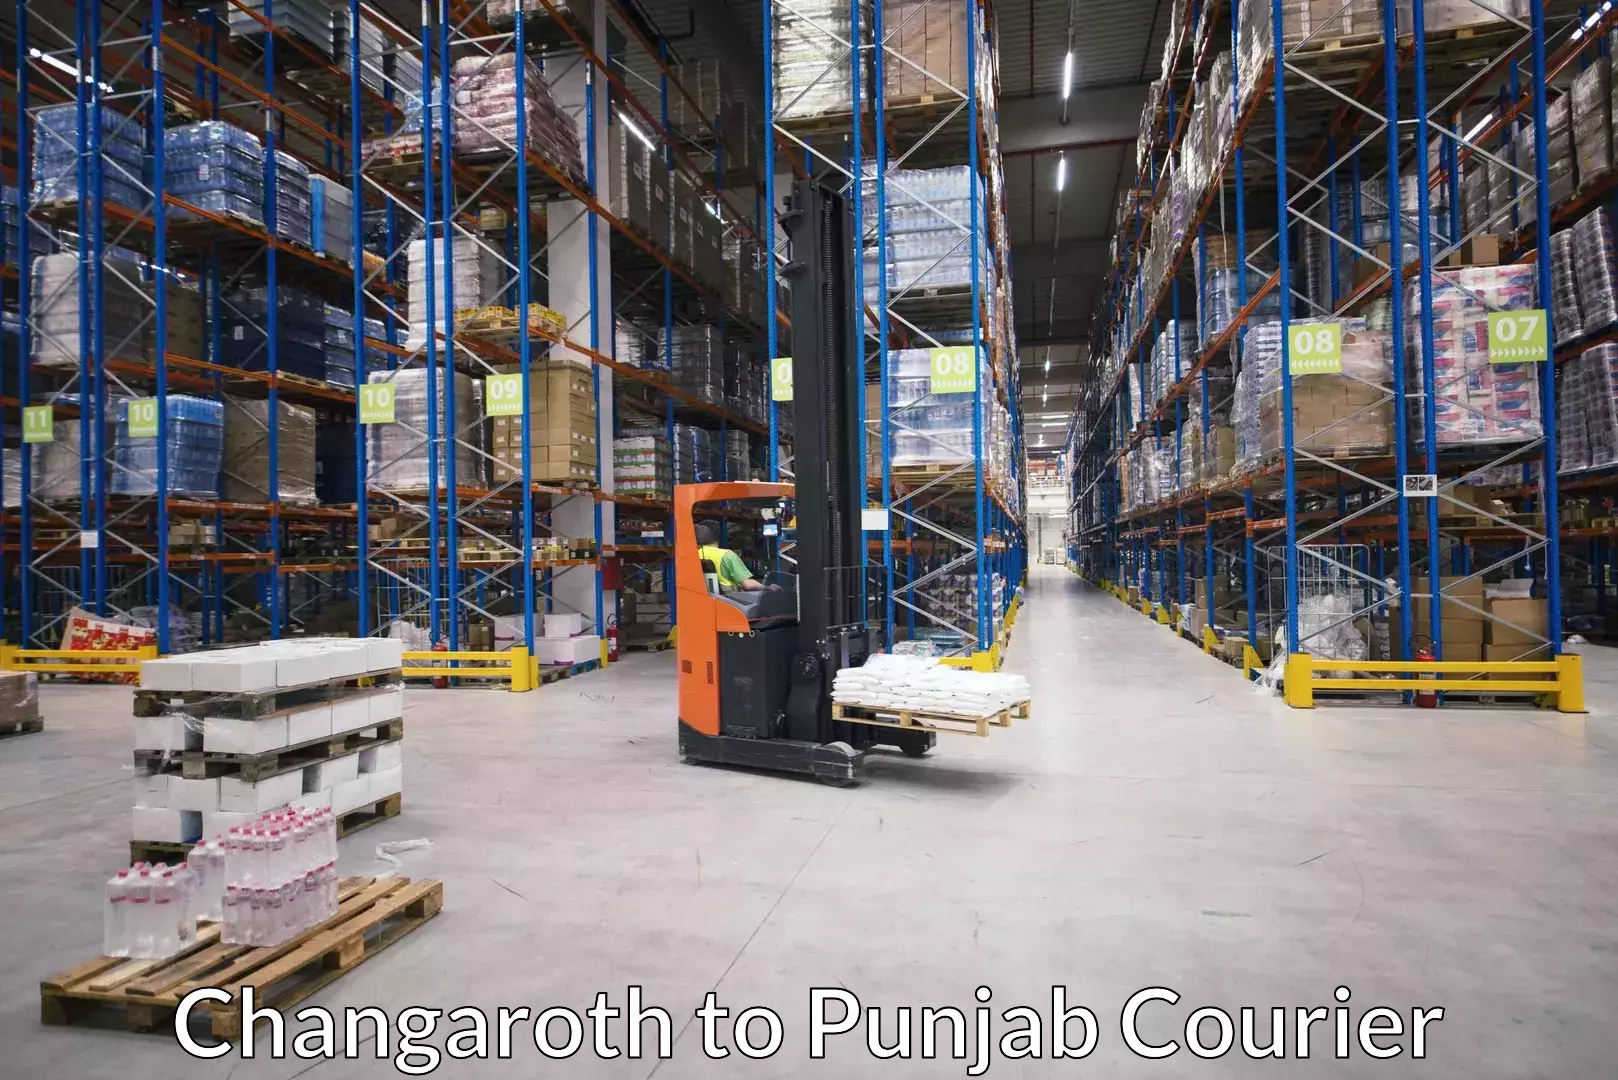 Furniture transport and storage Changaroth to Punjab